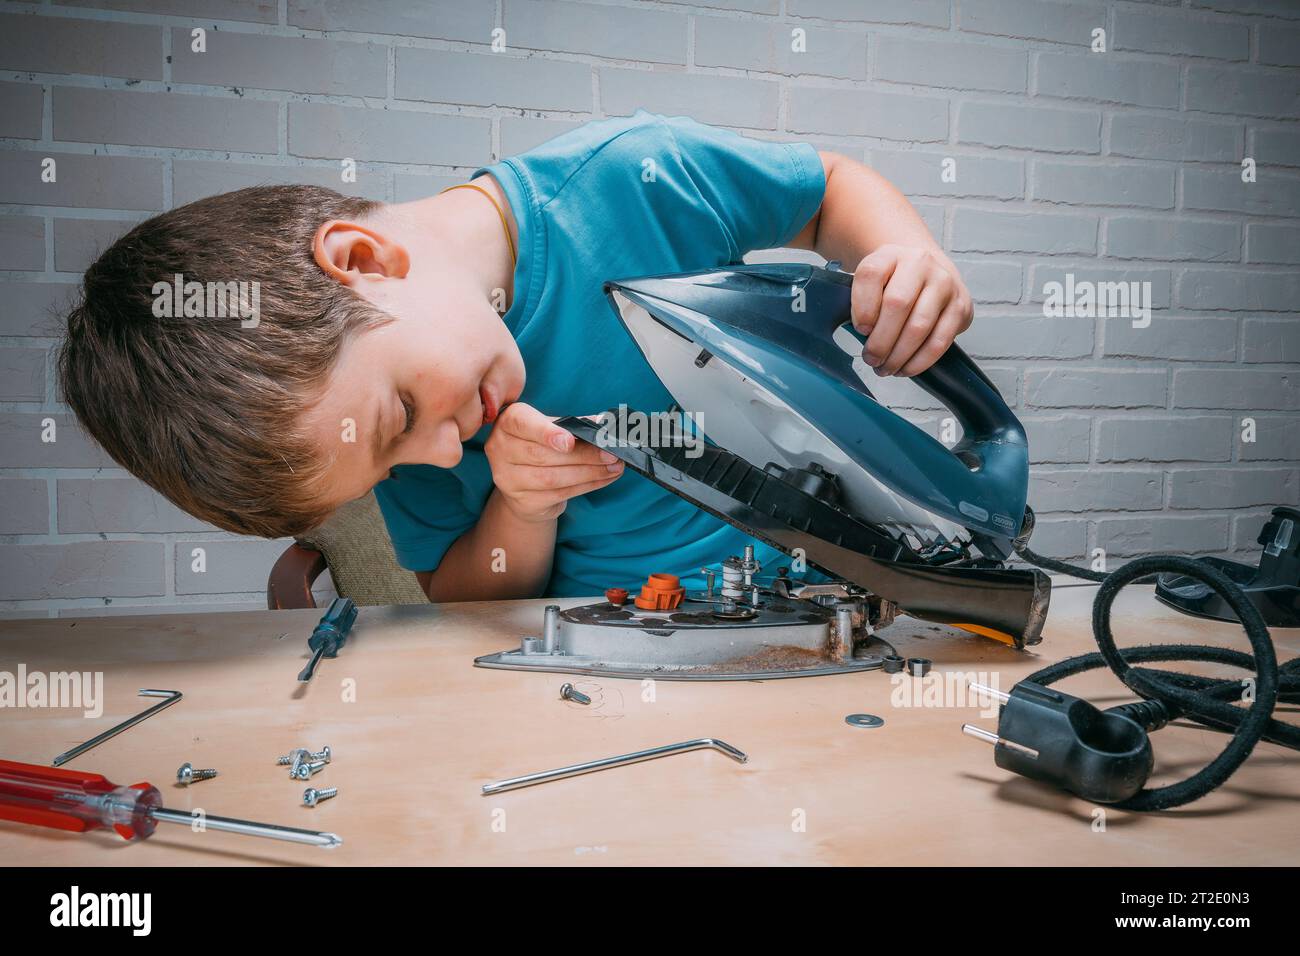 Junge hilft seiner Mutter. Ein lustiger Meister repariert ein Elektroeisen auf dem Tisch mit Werkzeugen. Zerlegtes Elektroeisen. Stockfoto